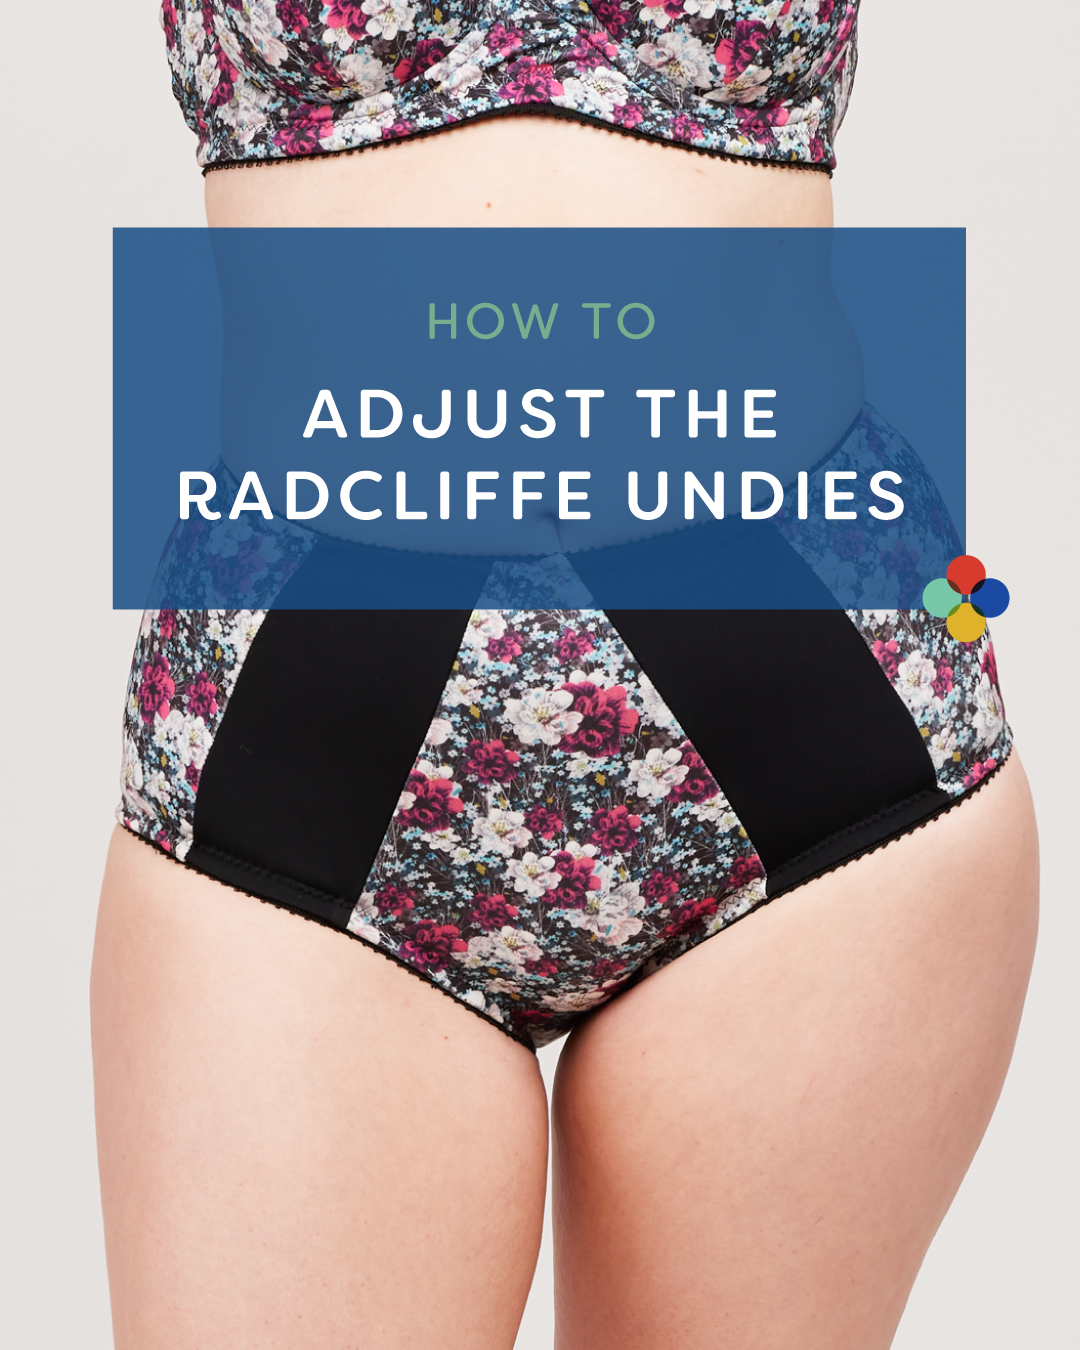 How to adjust an underwear pattern, featuring the Radcliffe Undies